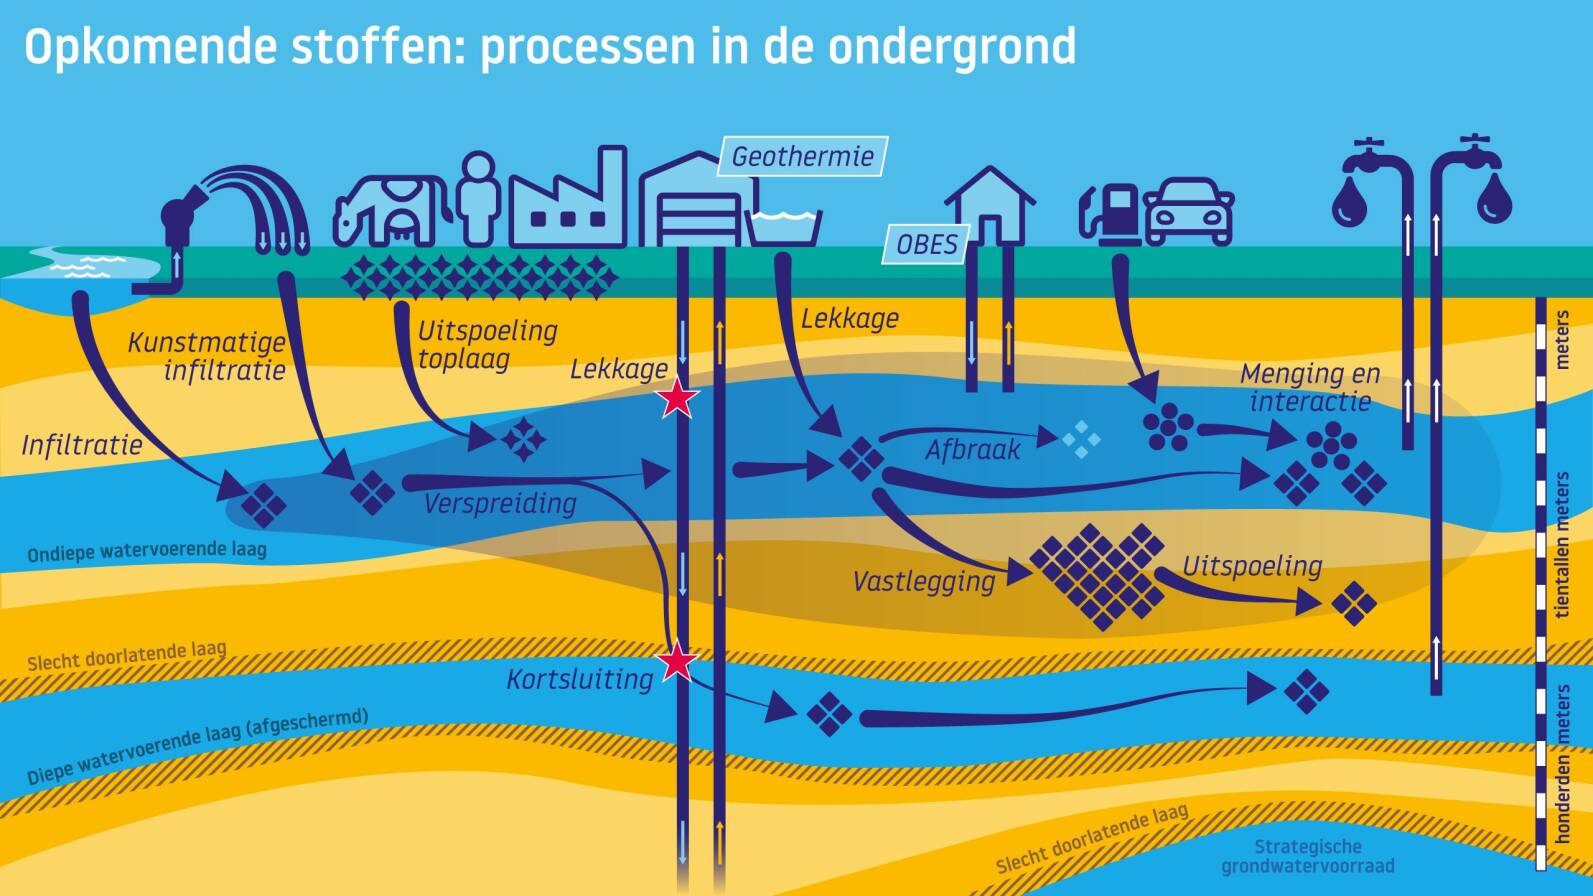 Infographic over opkomende stoffen in grondwater met focus op processen in de ondergrond.